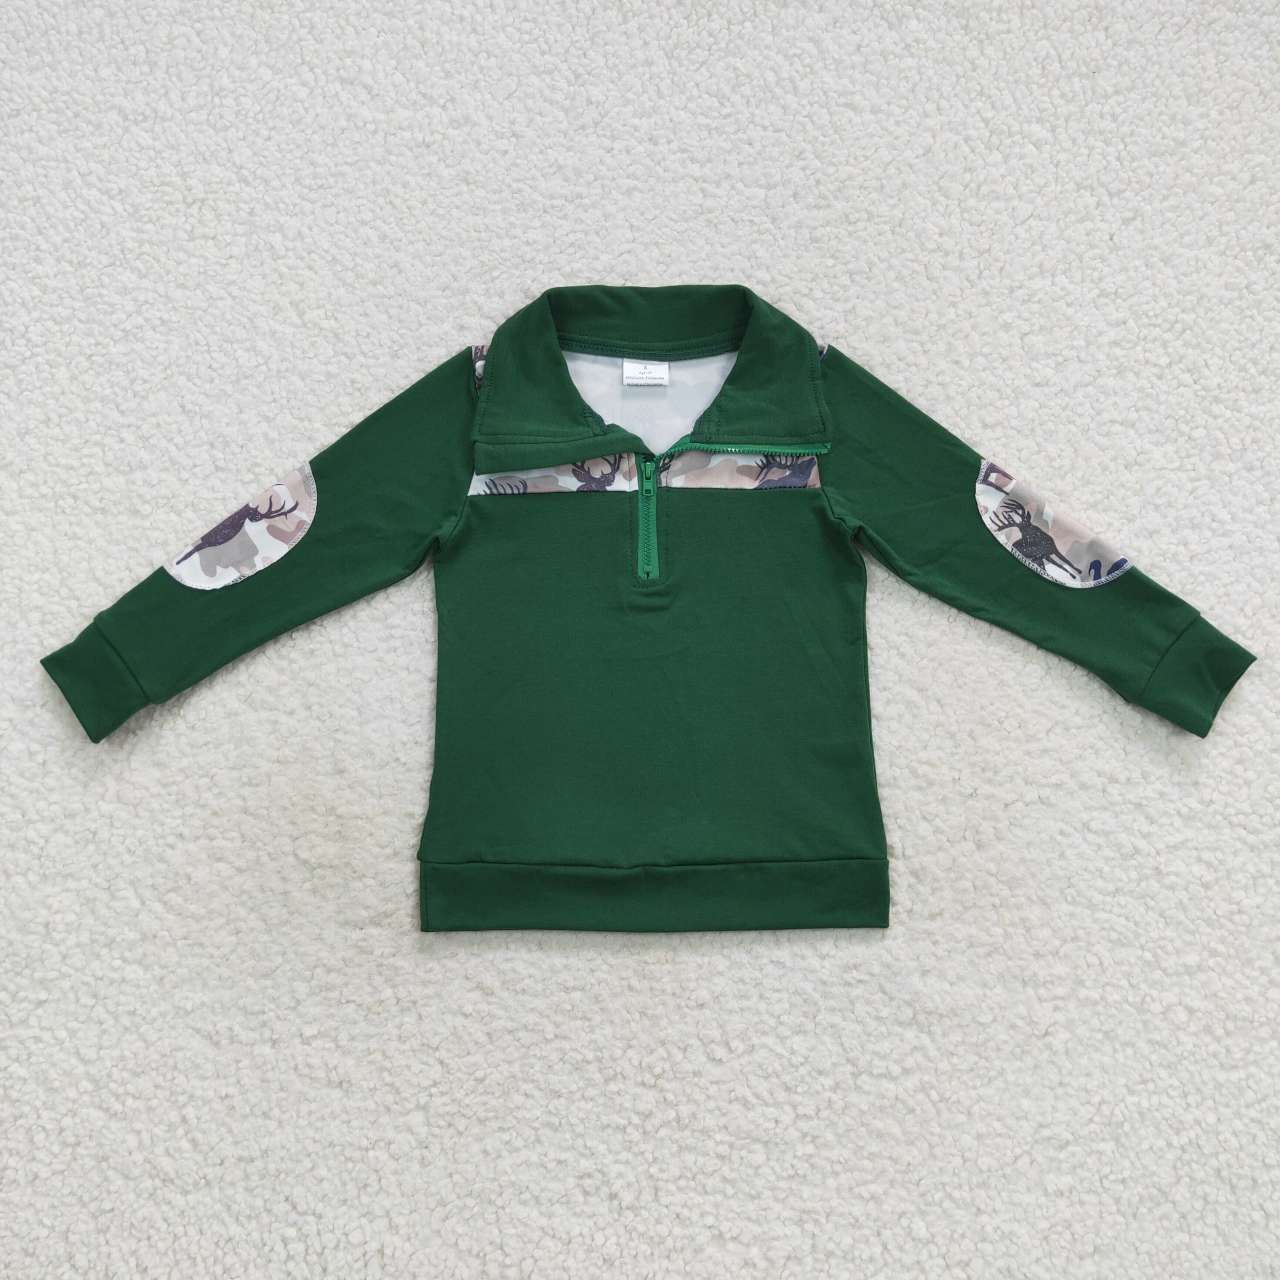 BT0277 Boys green deer turkey camo print long sleeve zipper pullover shirts